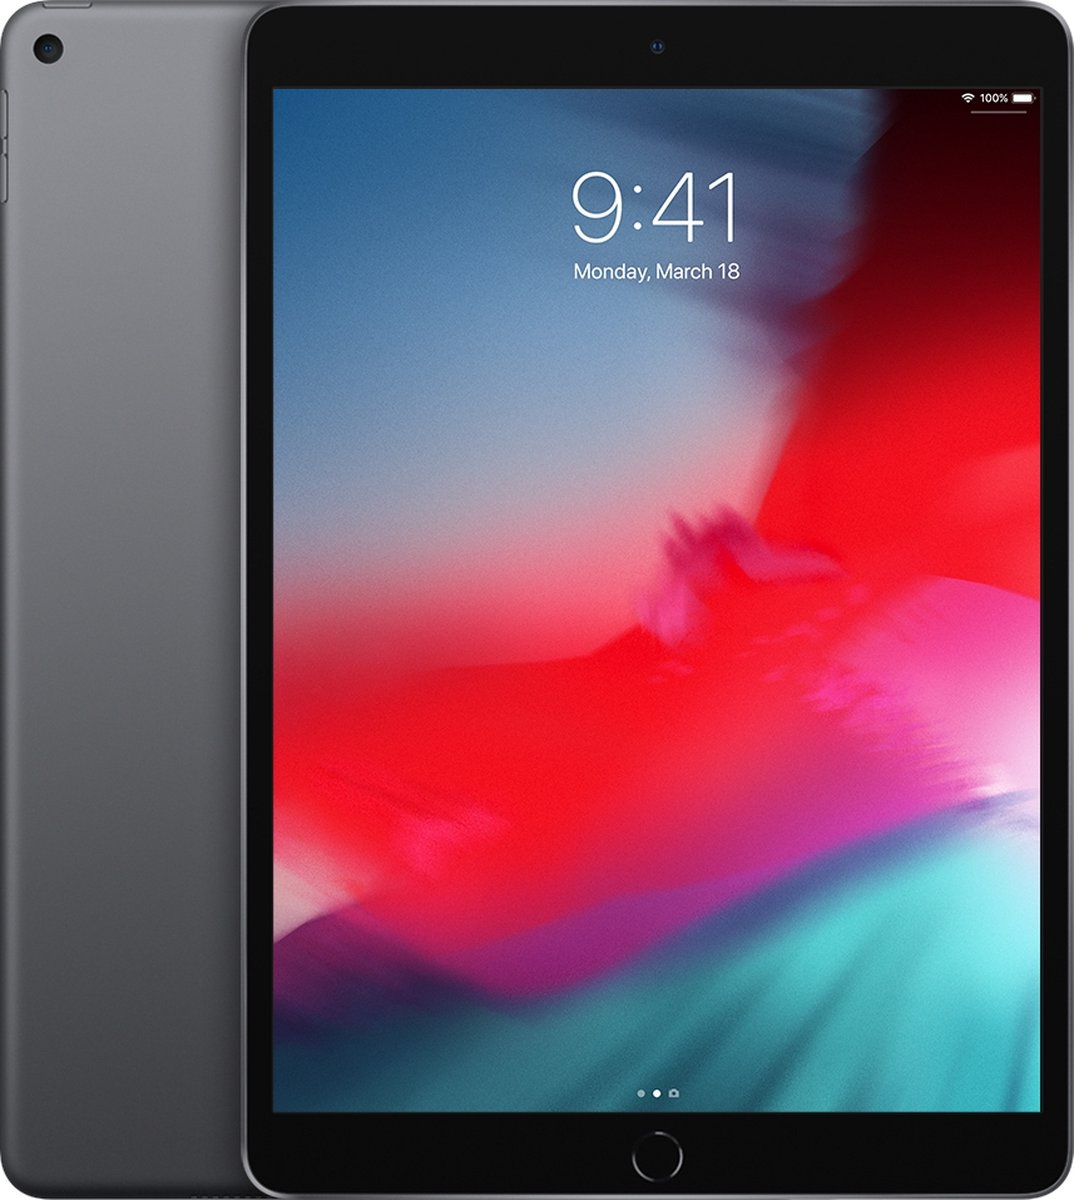 Apple iPad Air (2019) - 10.5 inch - WiFi - 64GB - Spacegrijs (2750108200298)